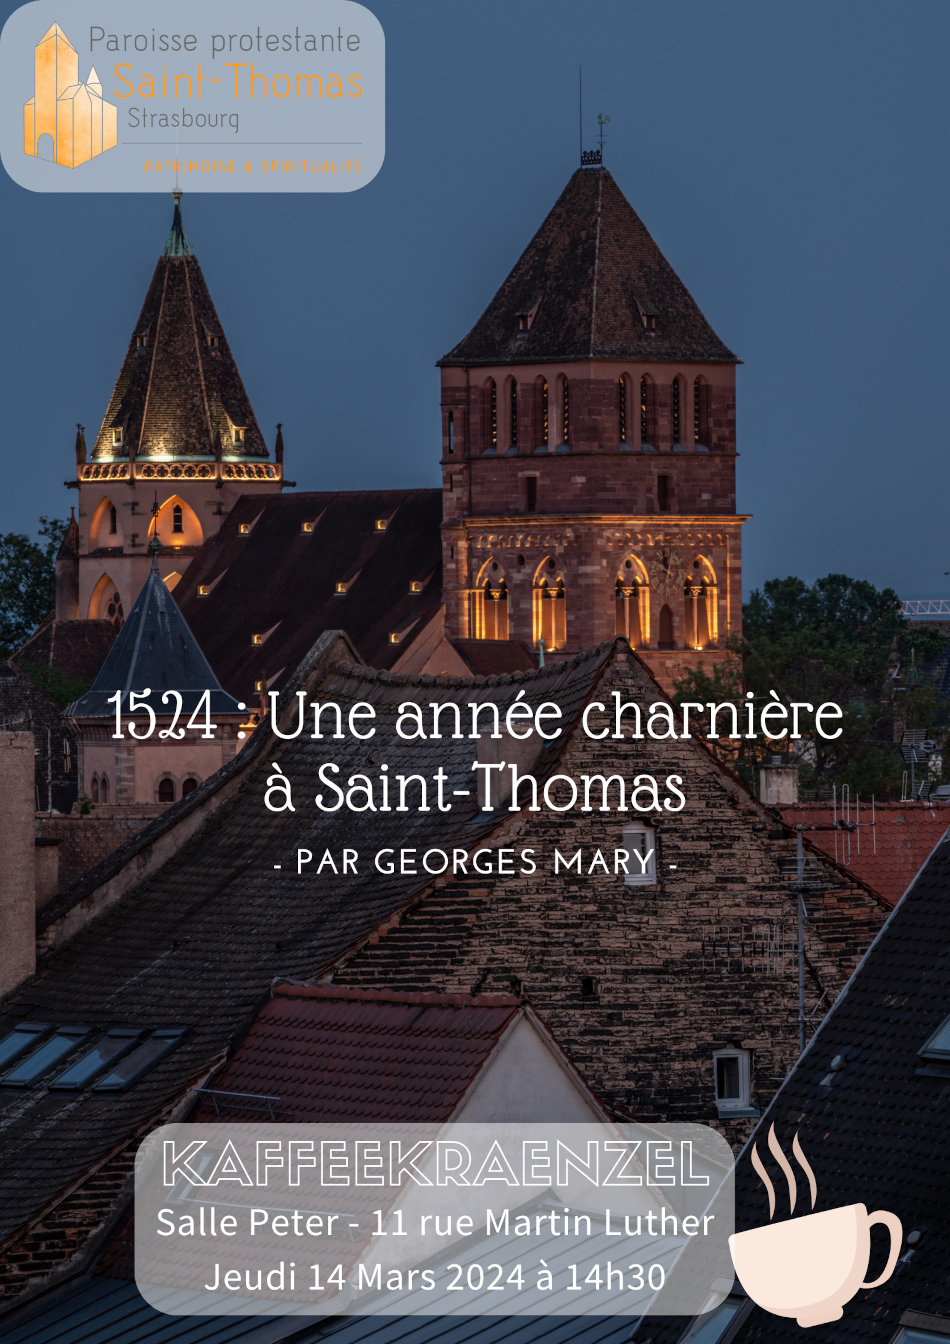 Kaffeekraenzel - 1524 : une année charnière à Saint-Thomas